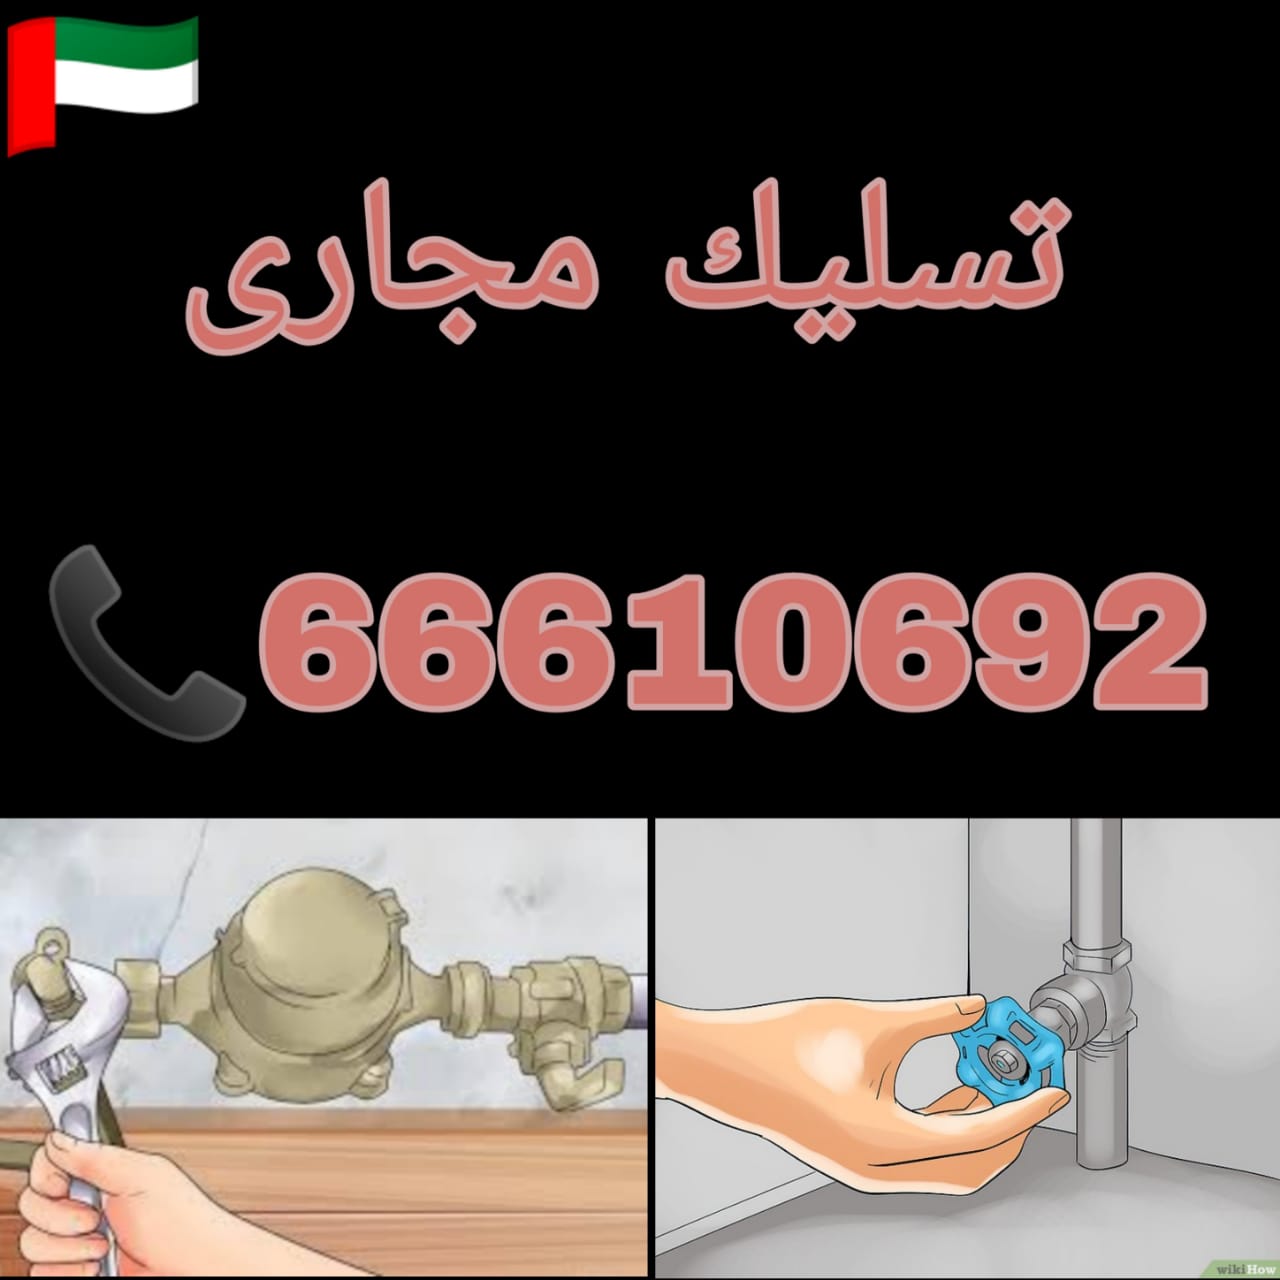 شركات تسليك مجاري الكويت / 66610692 / صيانة وتركيب فني صحي الكويت